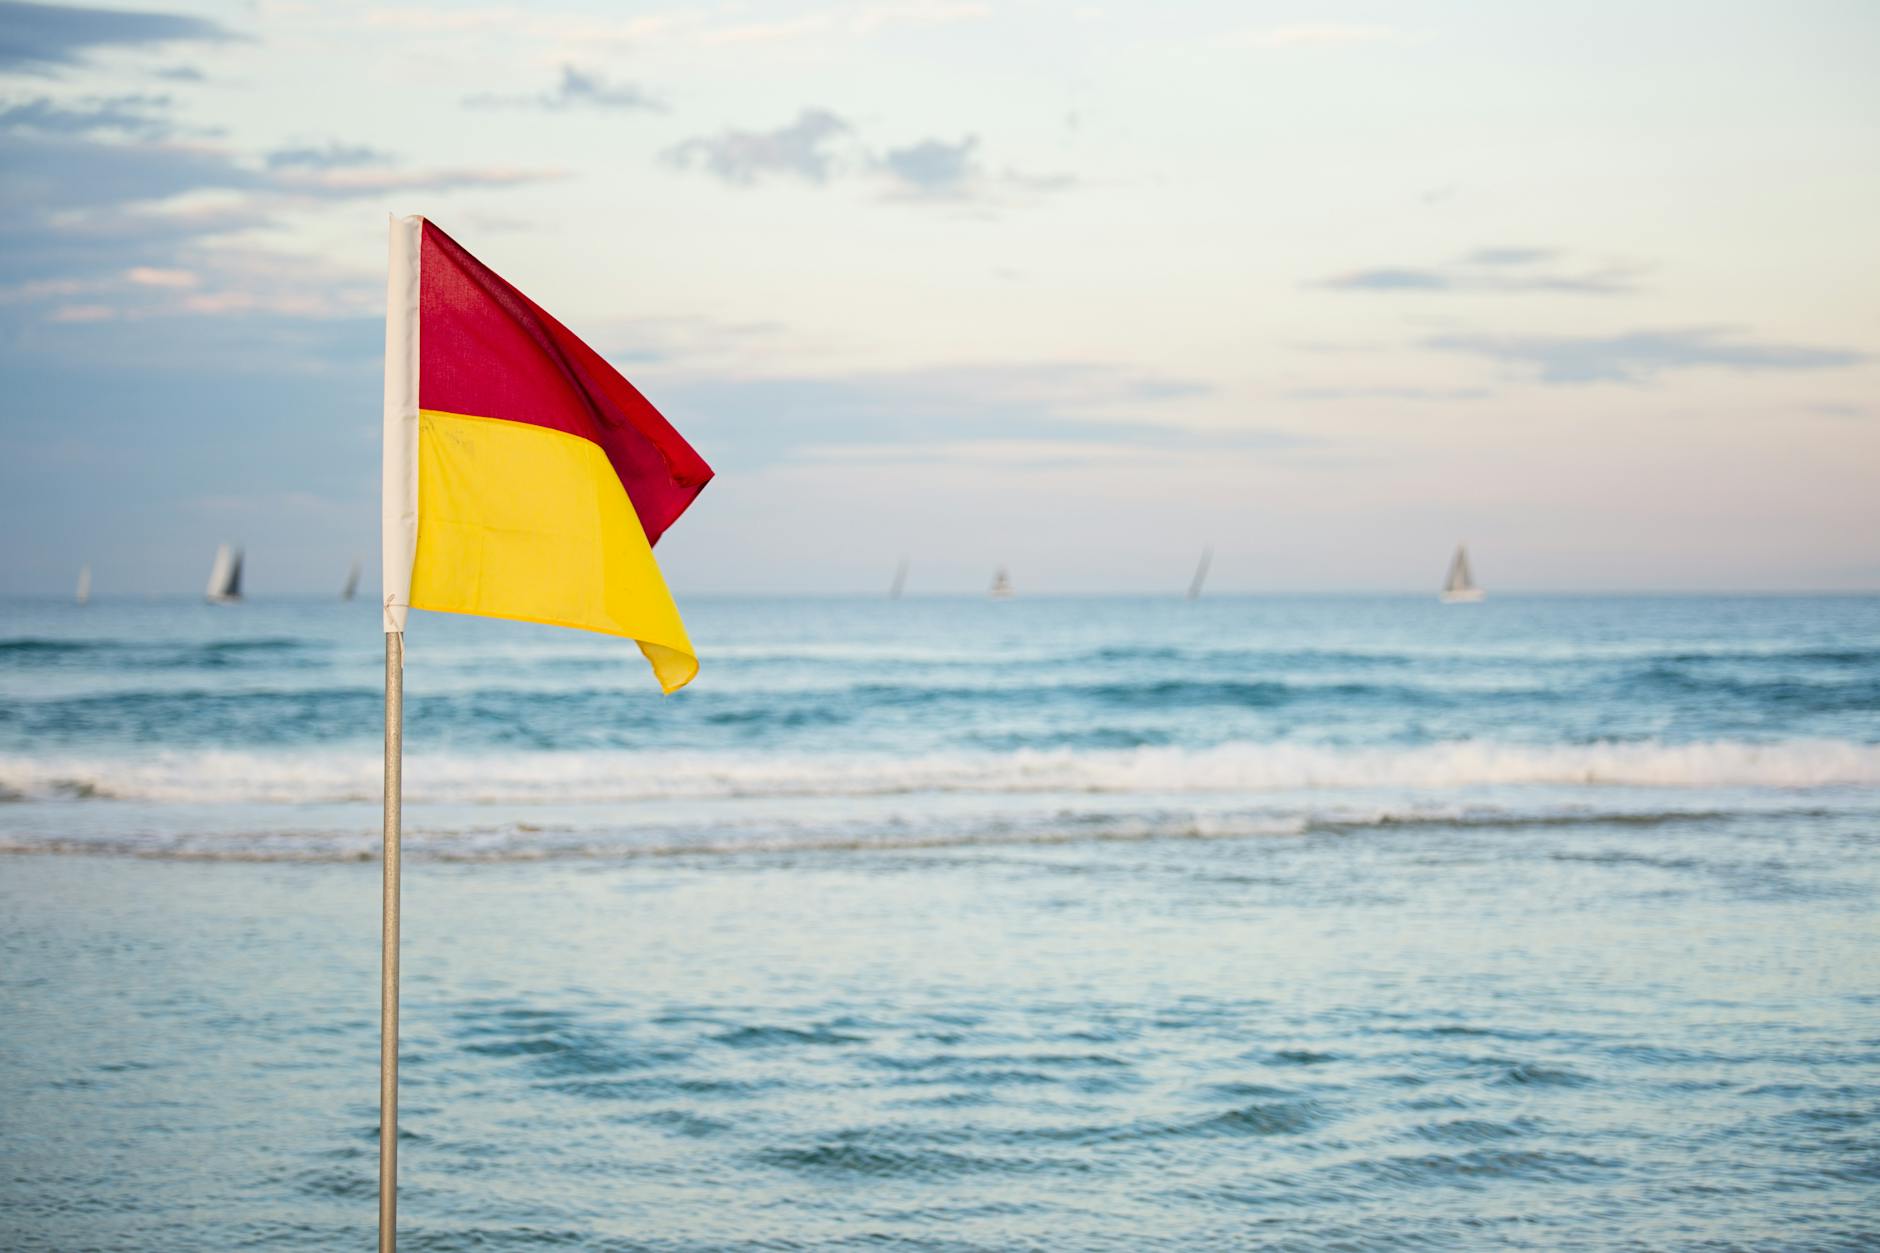 Beach safety flag